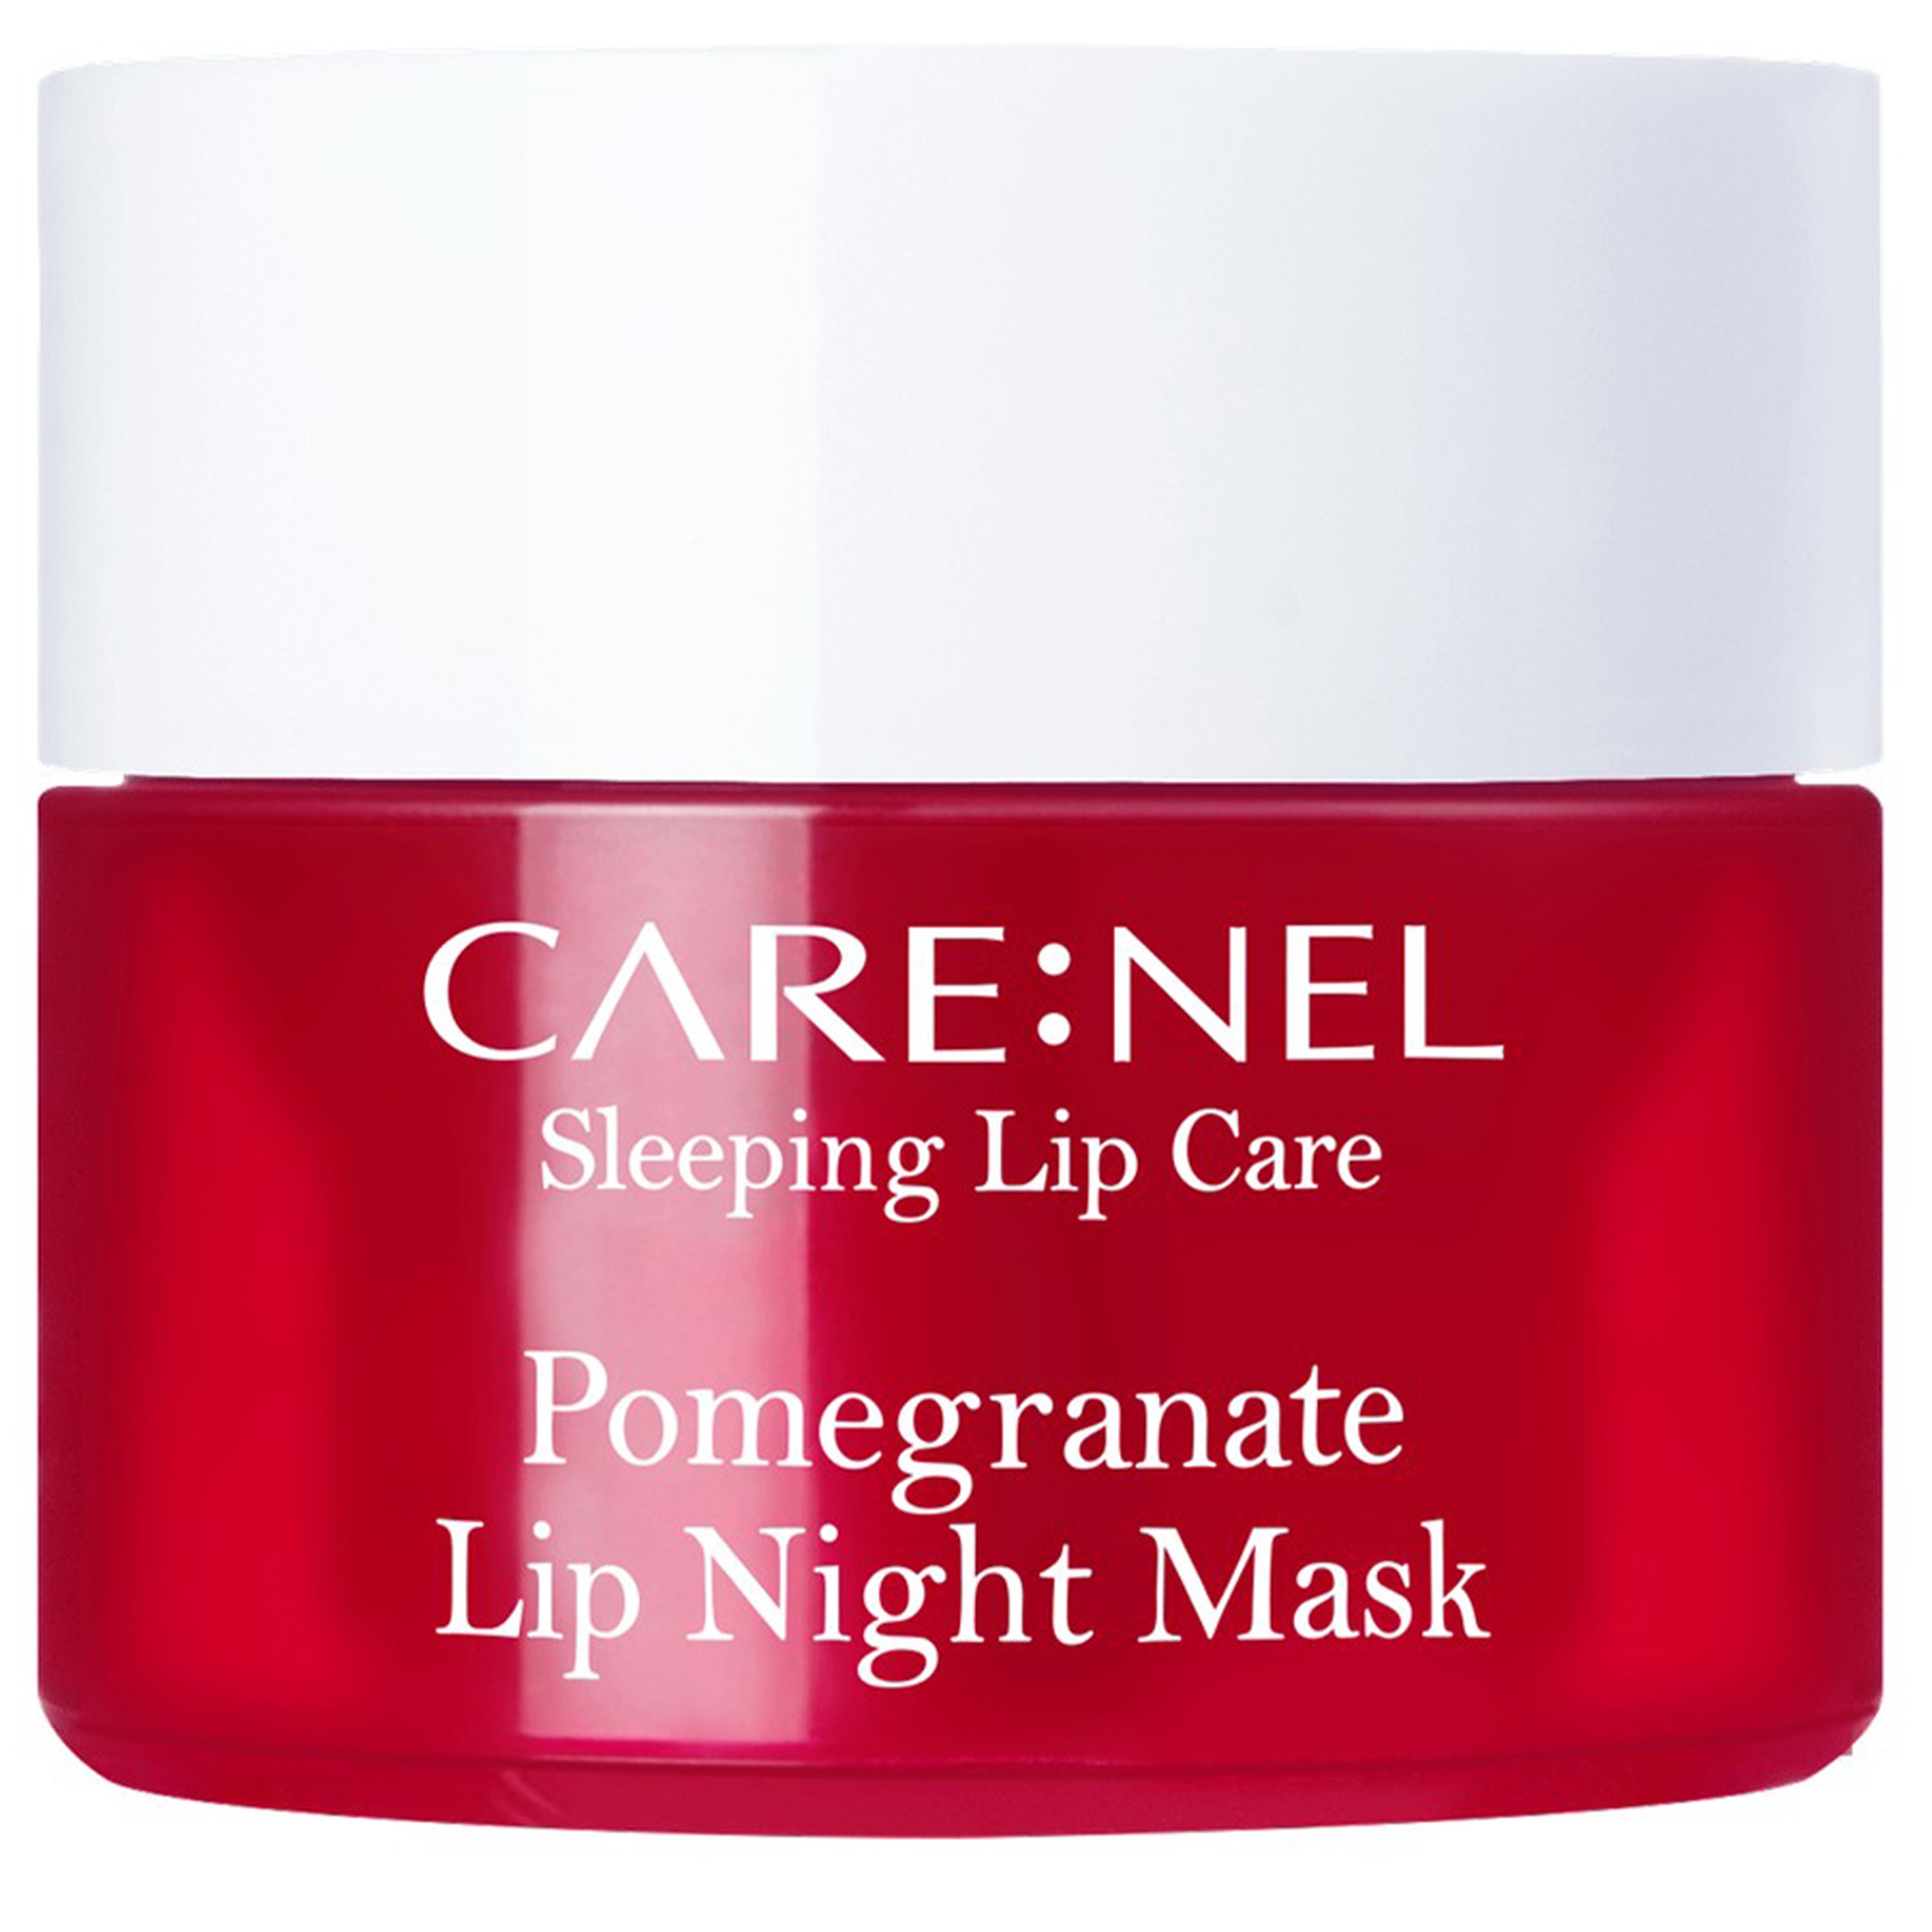 Mặt nạ ngủ môi Care:Nel Sleeping Lip Care Pomegranate hương lựu dưỡng ấm, mờ thâm môi, ngừa nứt nẻ môi (5g)